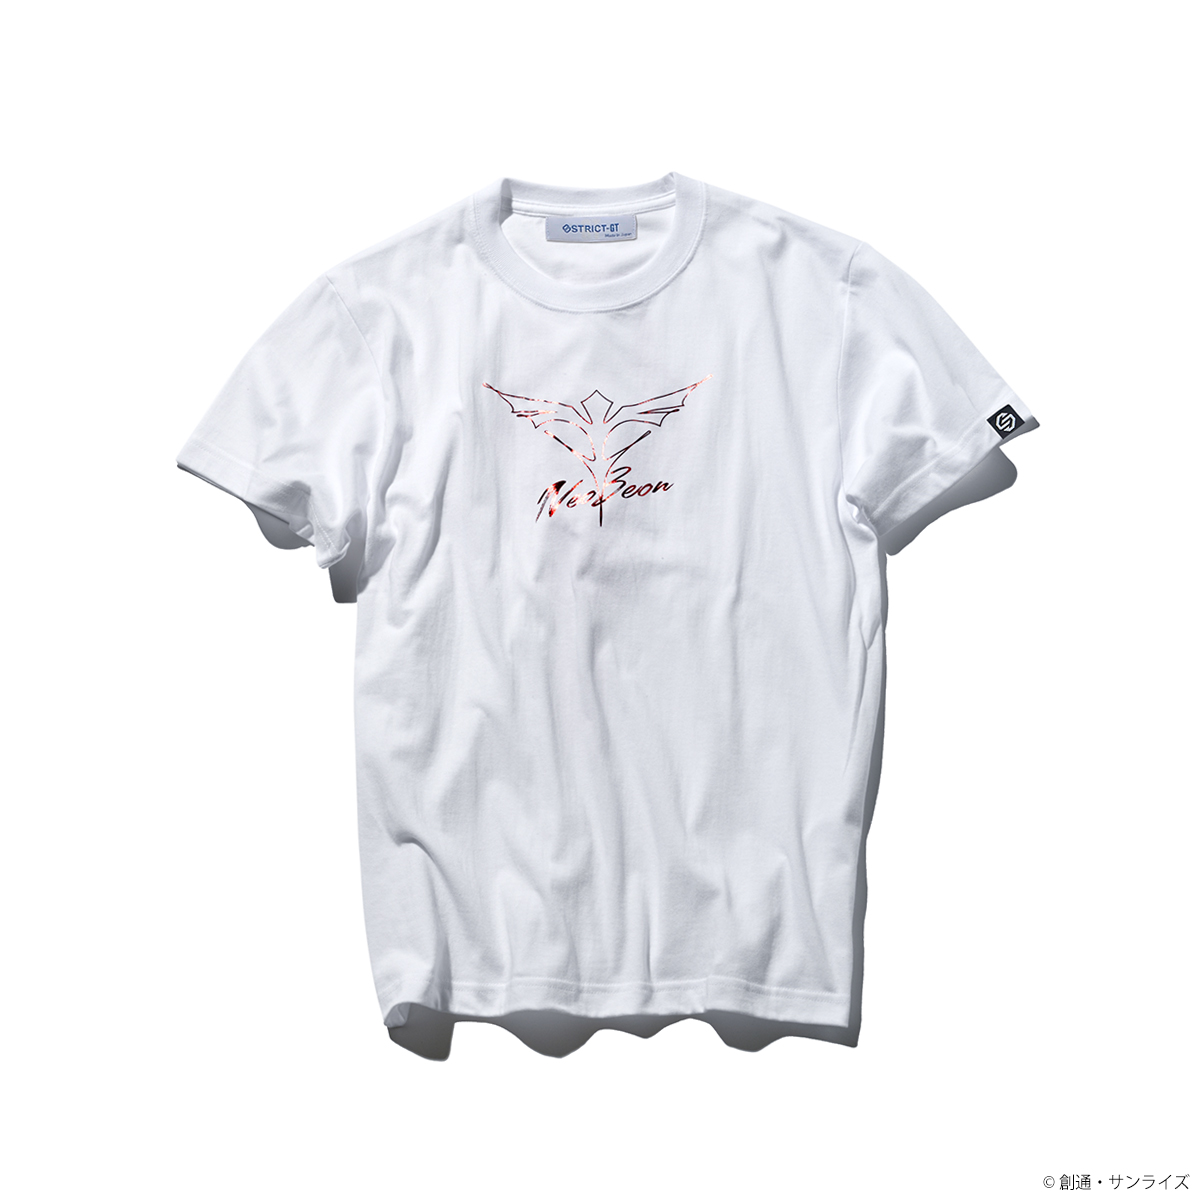 STRICT-G『機動戦士ガンダム 逆襲のシャア』箔プリントTシャツ  サザビー・シールド柄